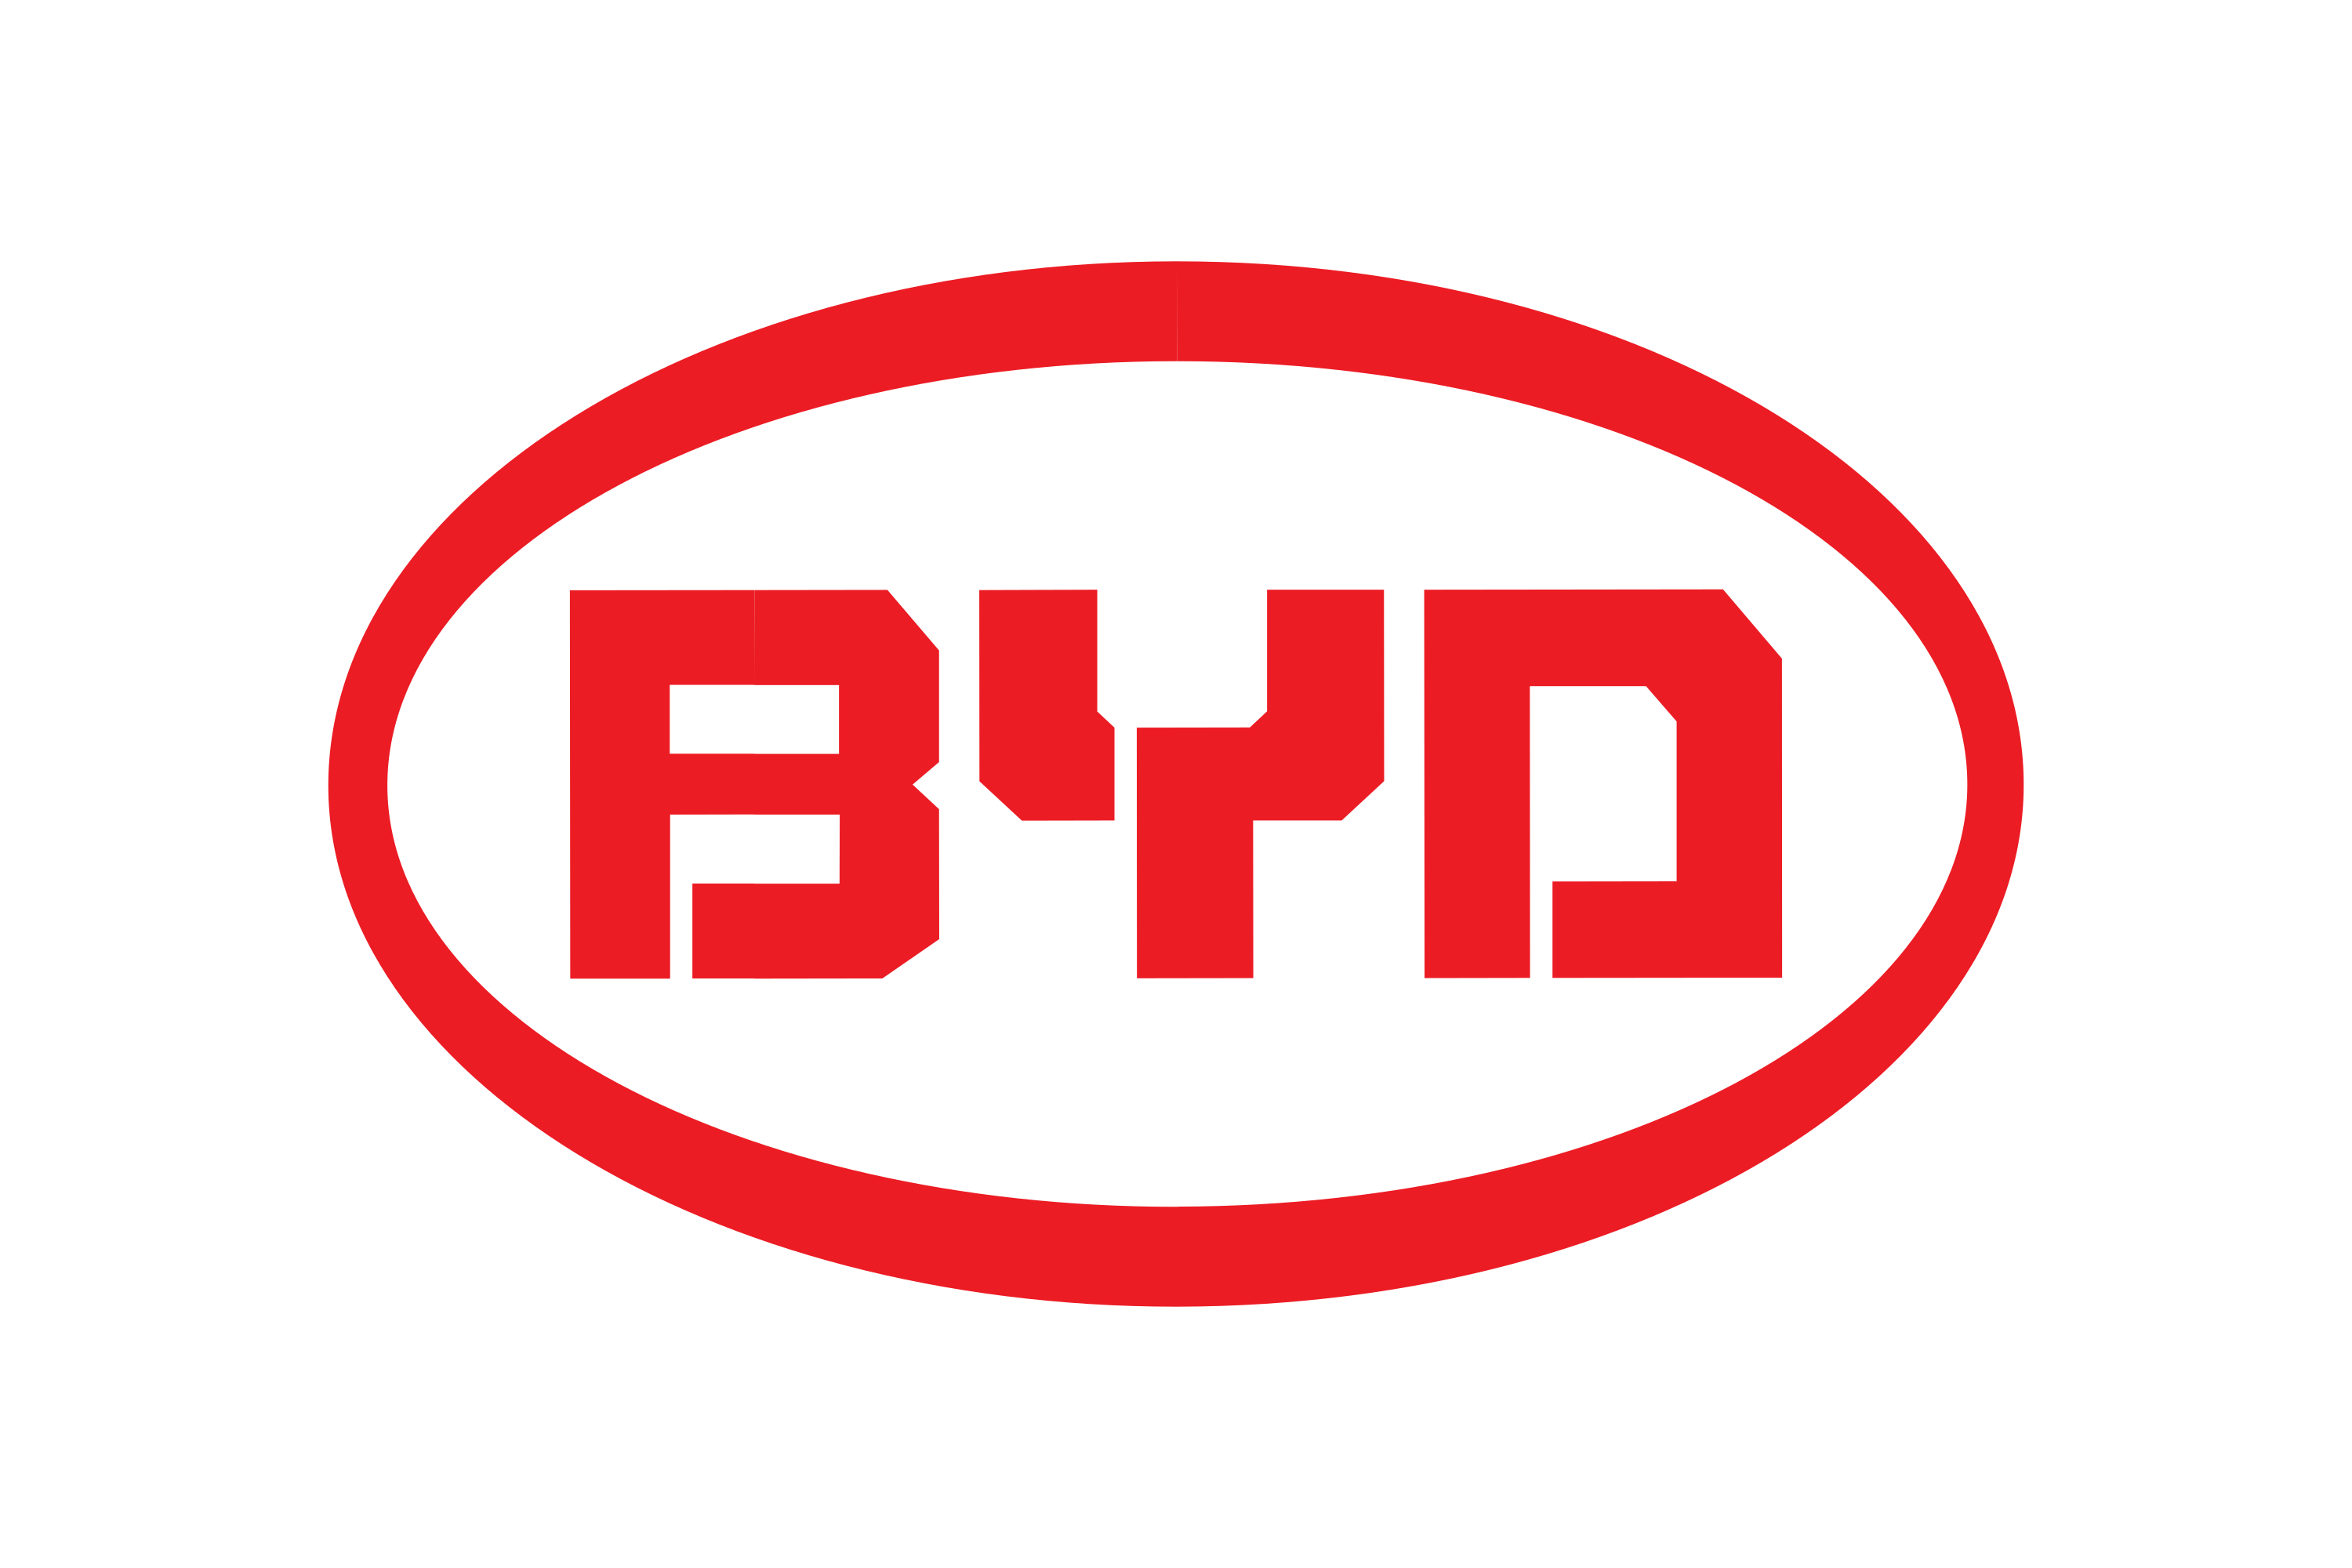 BYD Company Logo